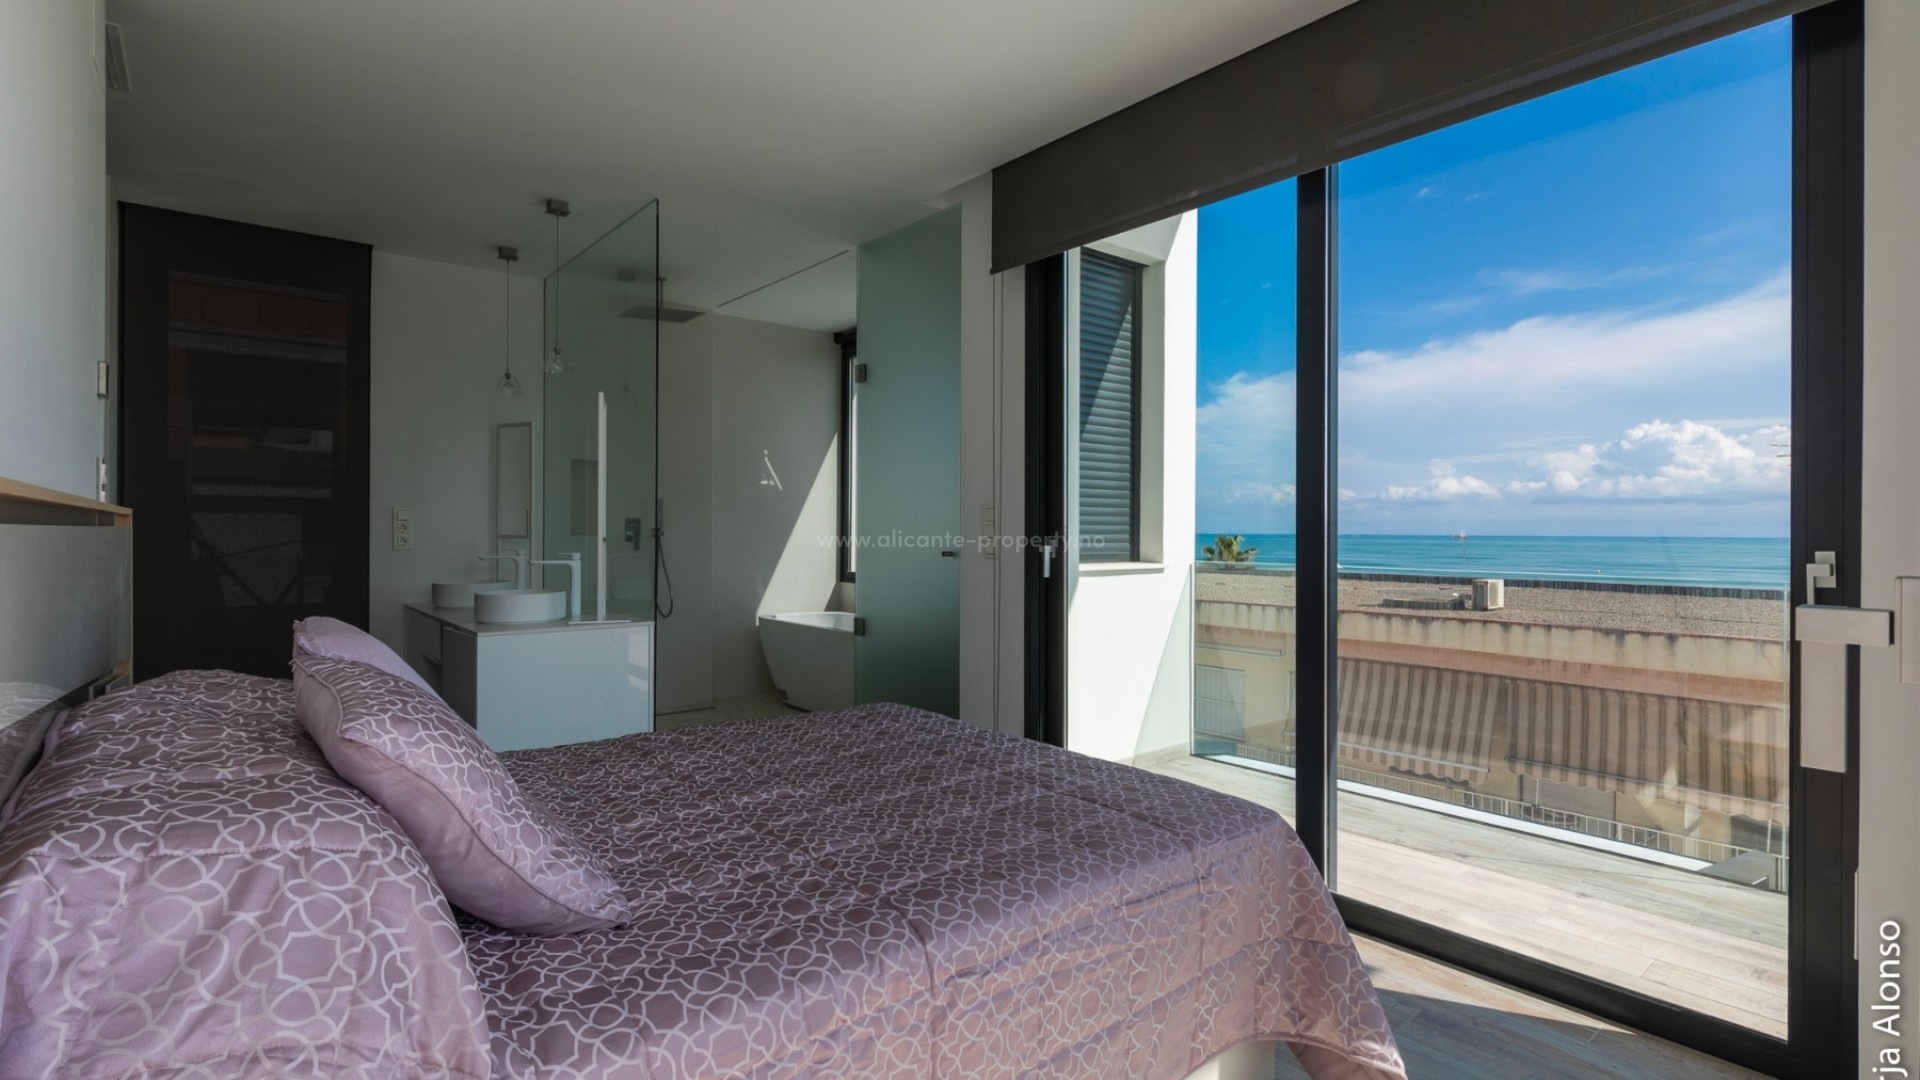 Luksus-villa 283 m2 i Guardamar del Segura m/uslåelig utsikt, 2min fra strand, 3 soverom og 3 bad, privat hage med basseng, en kjeller og et solarium 